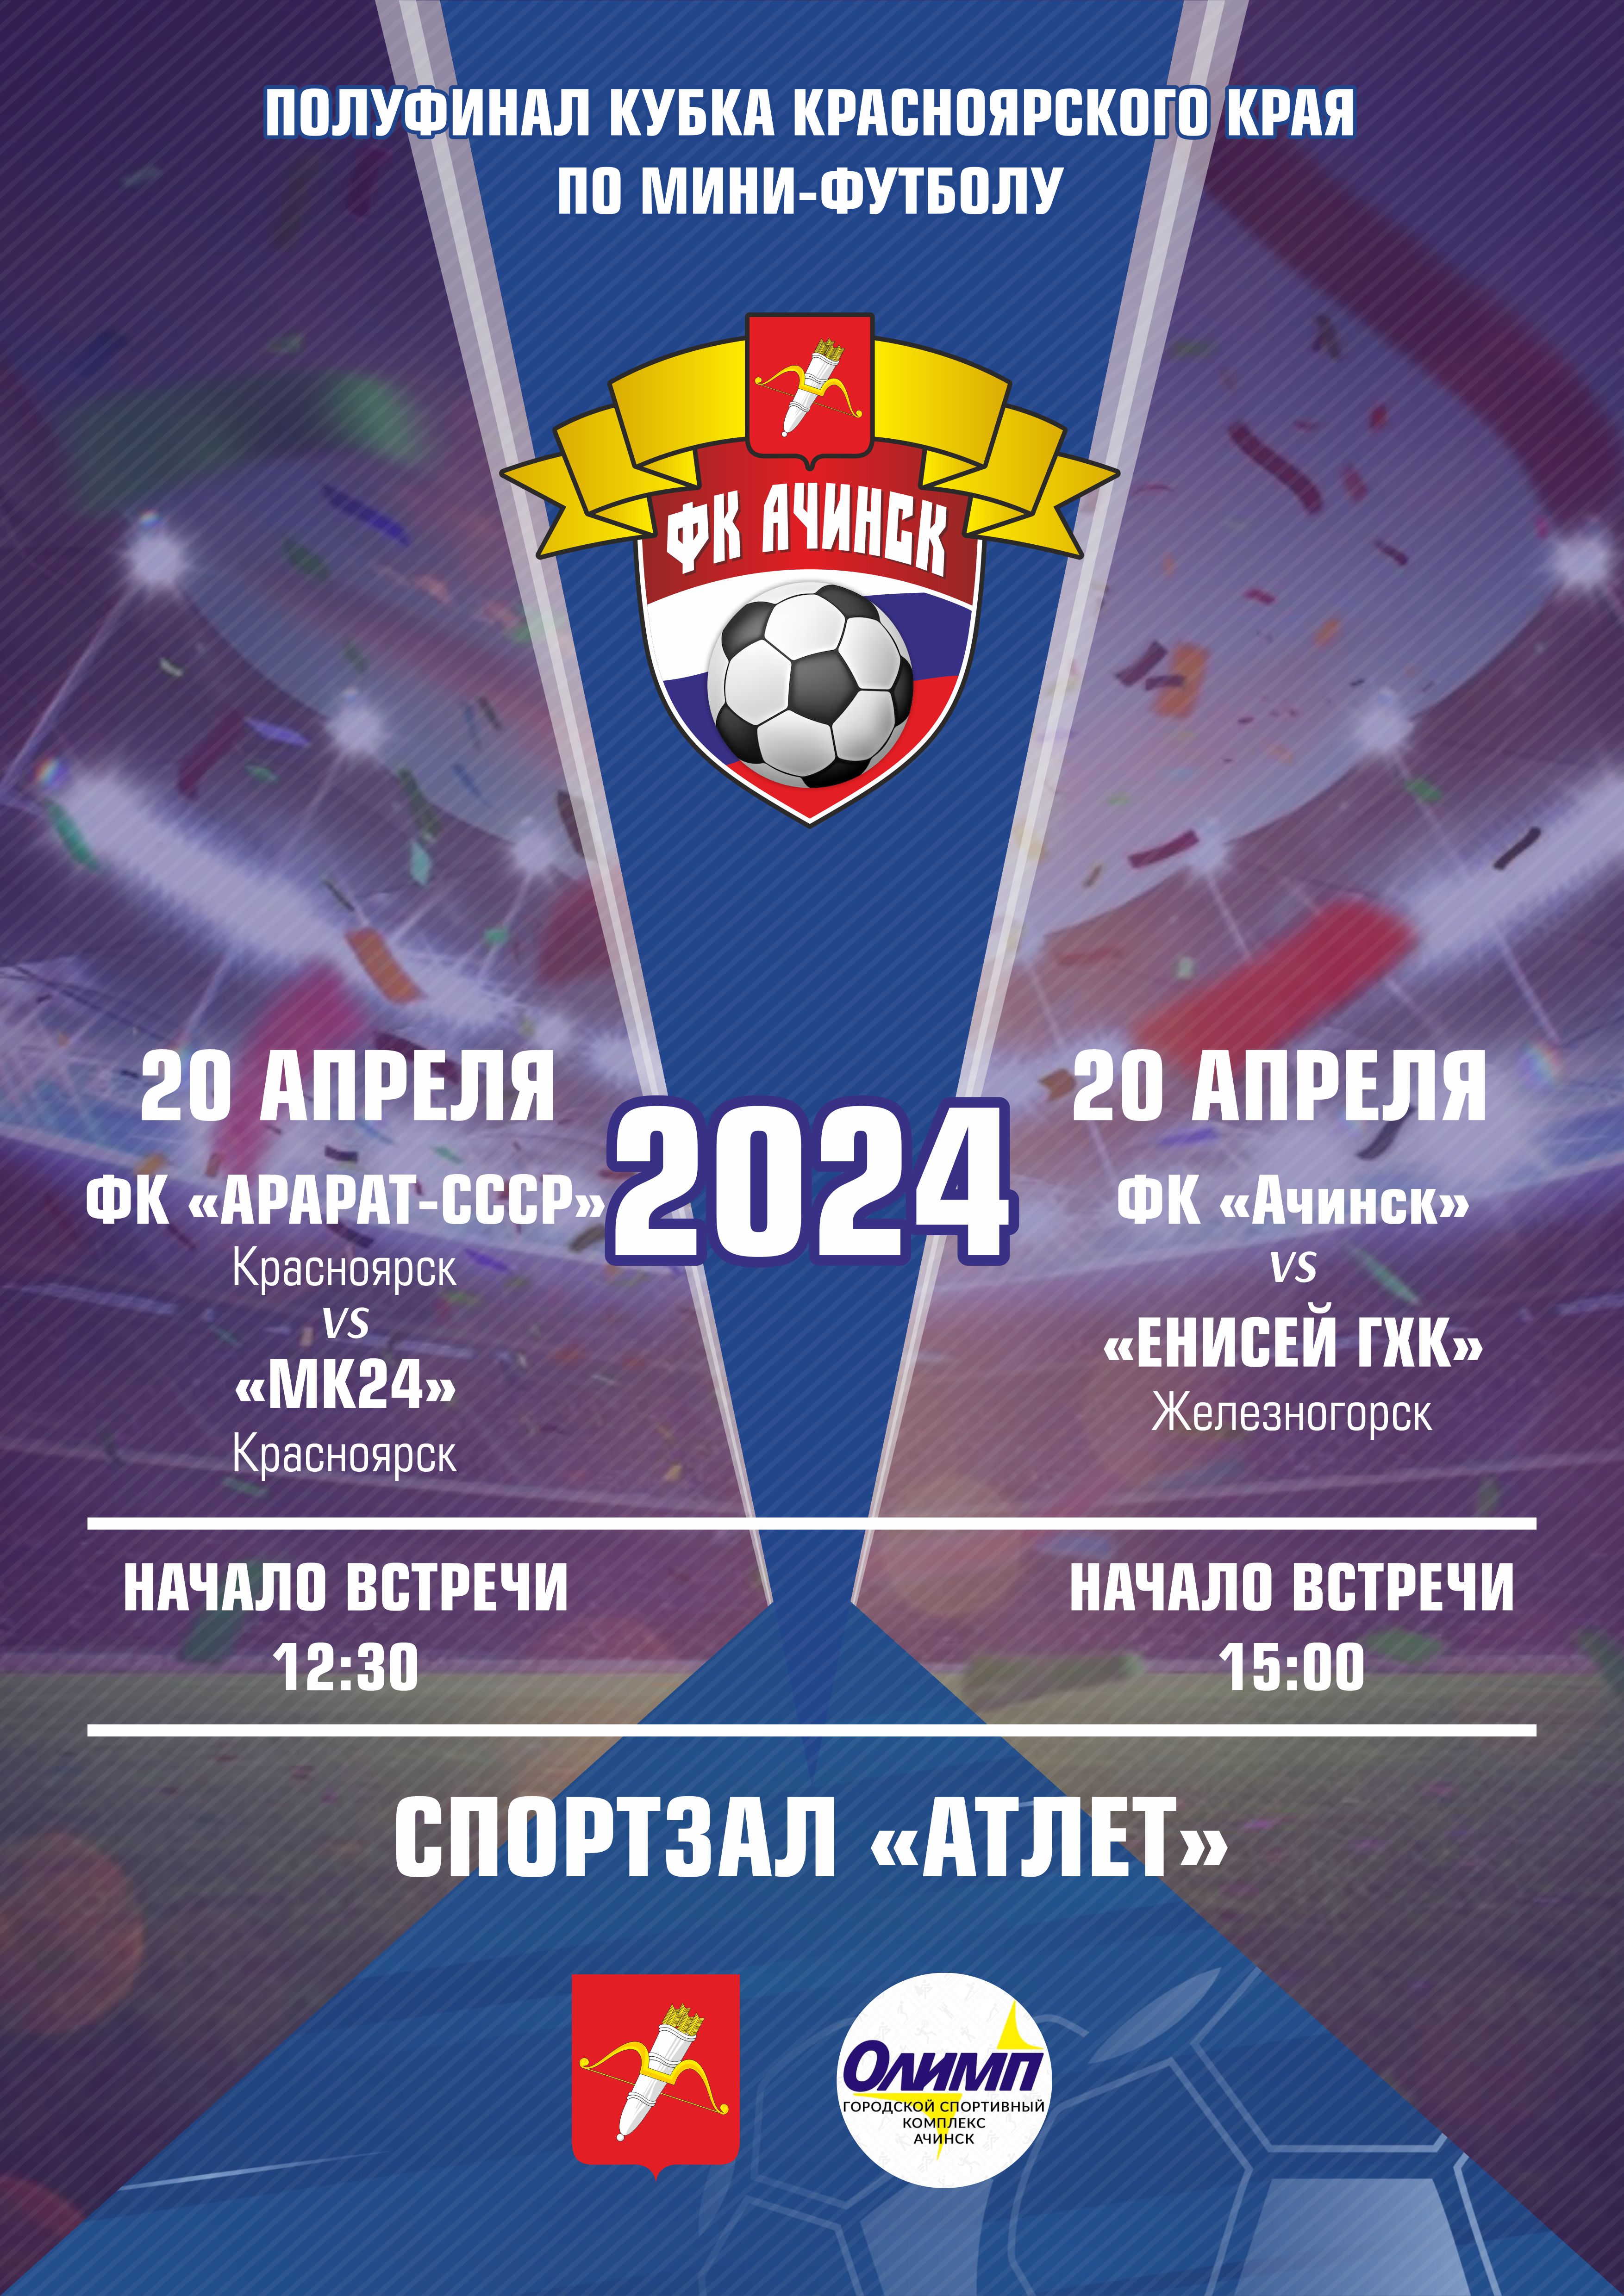 Полуфинал кубка Красноярского края по мини-футболу.